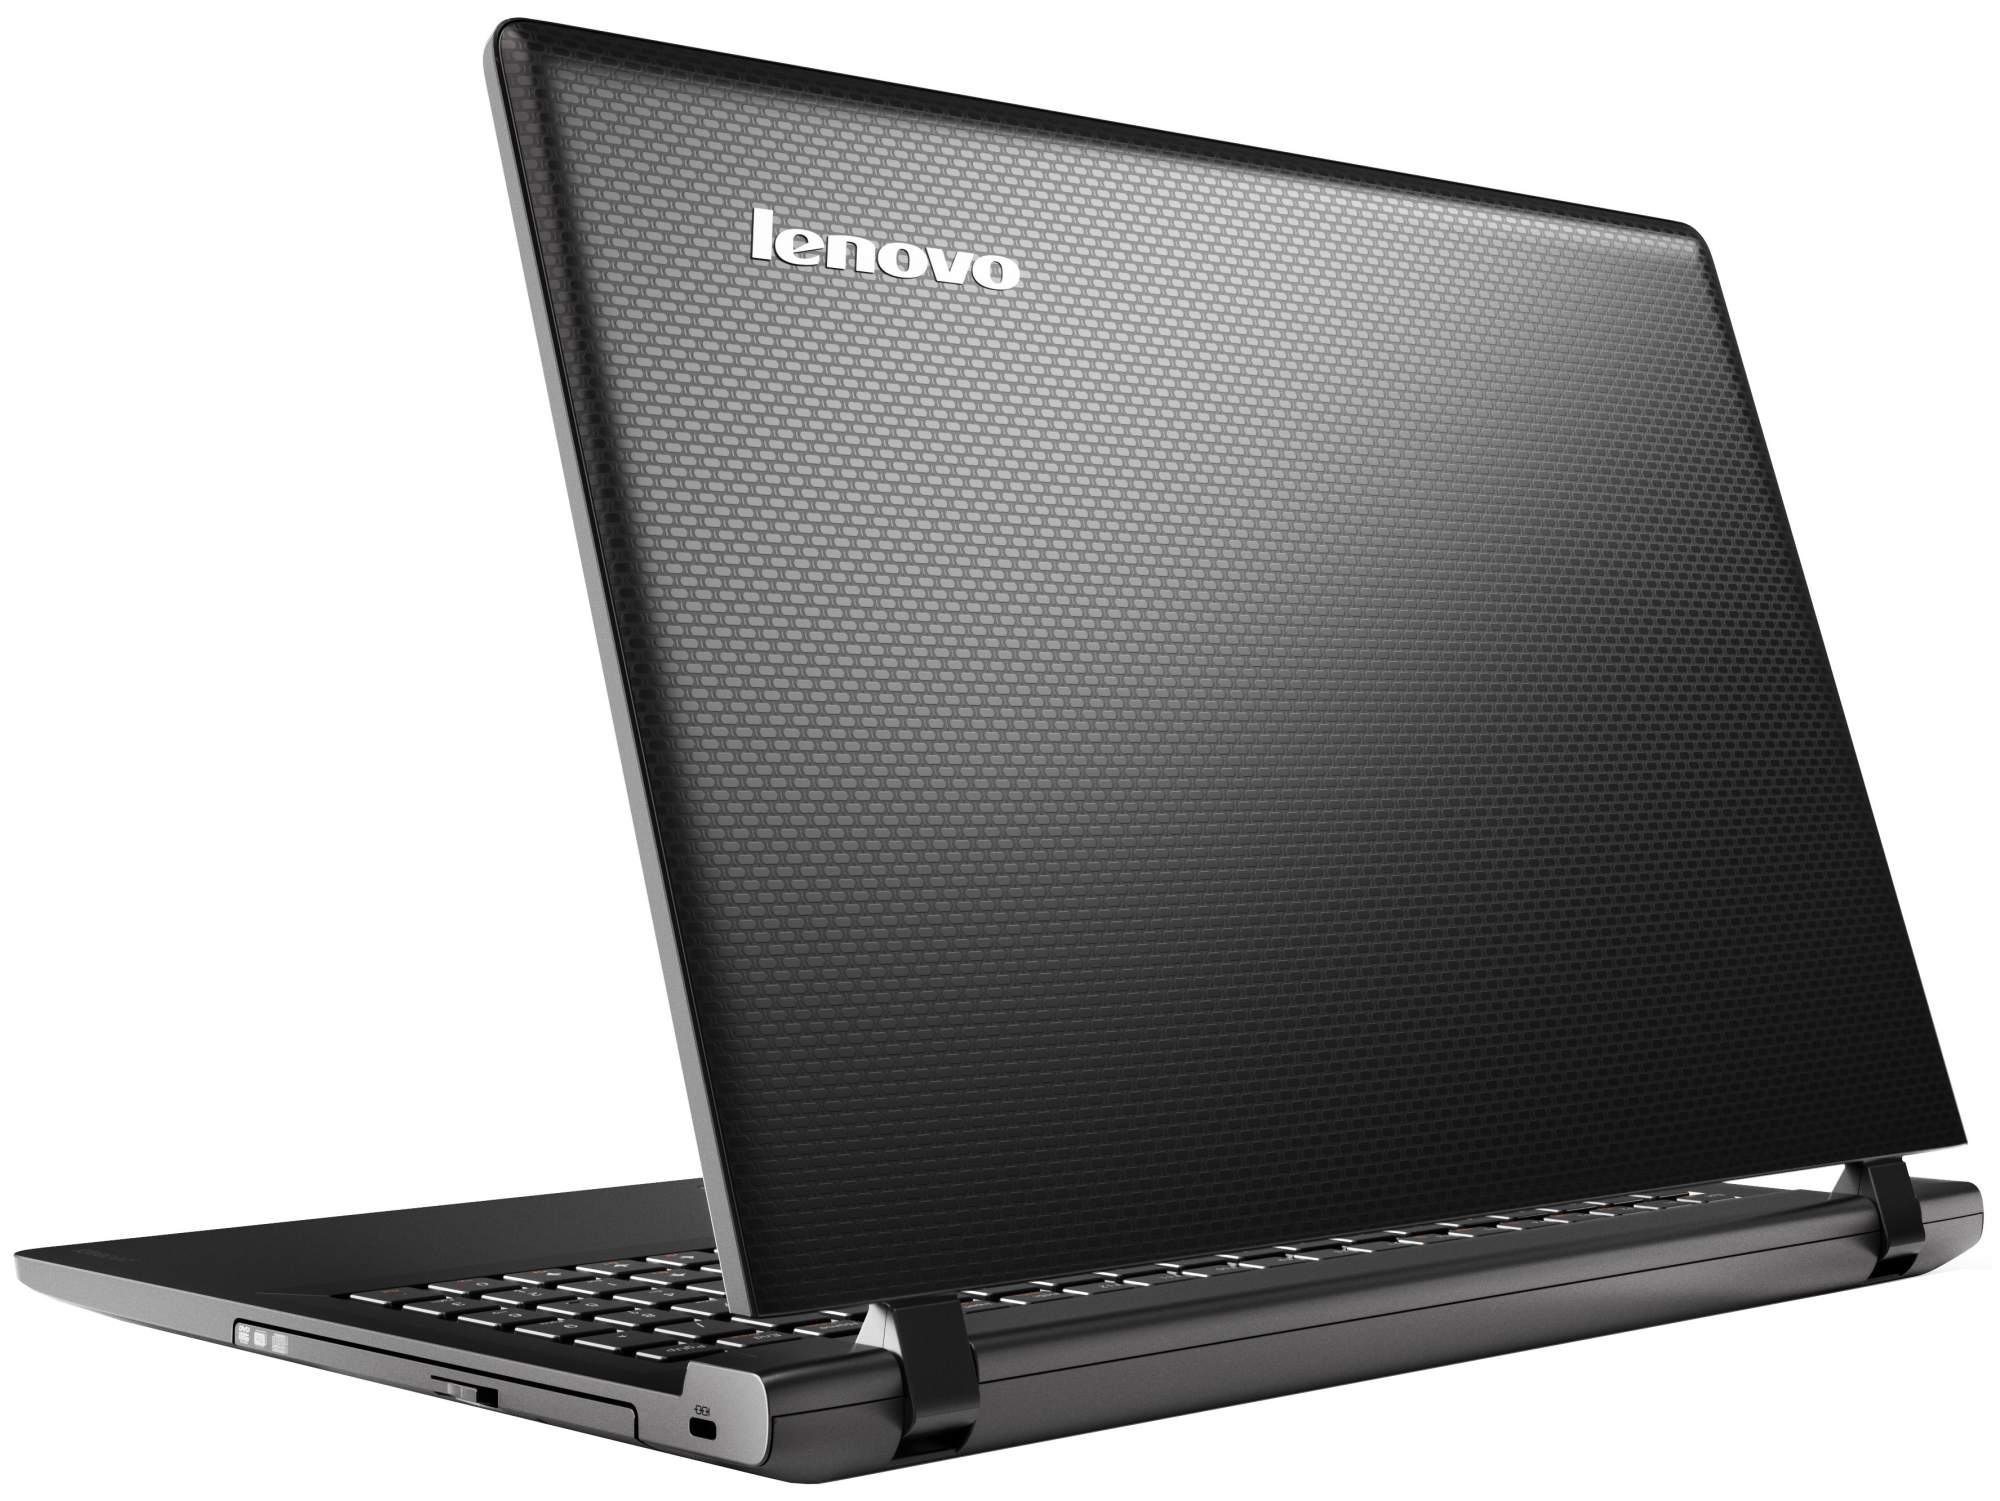 Купить Ноутбук Lenovo Ideapad 100-15iby 80mj00dtrk